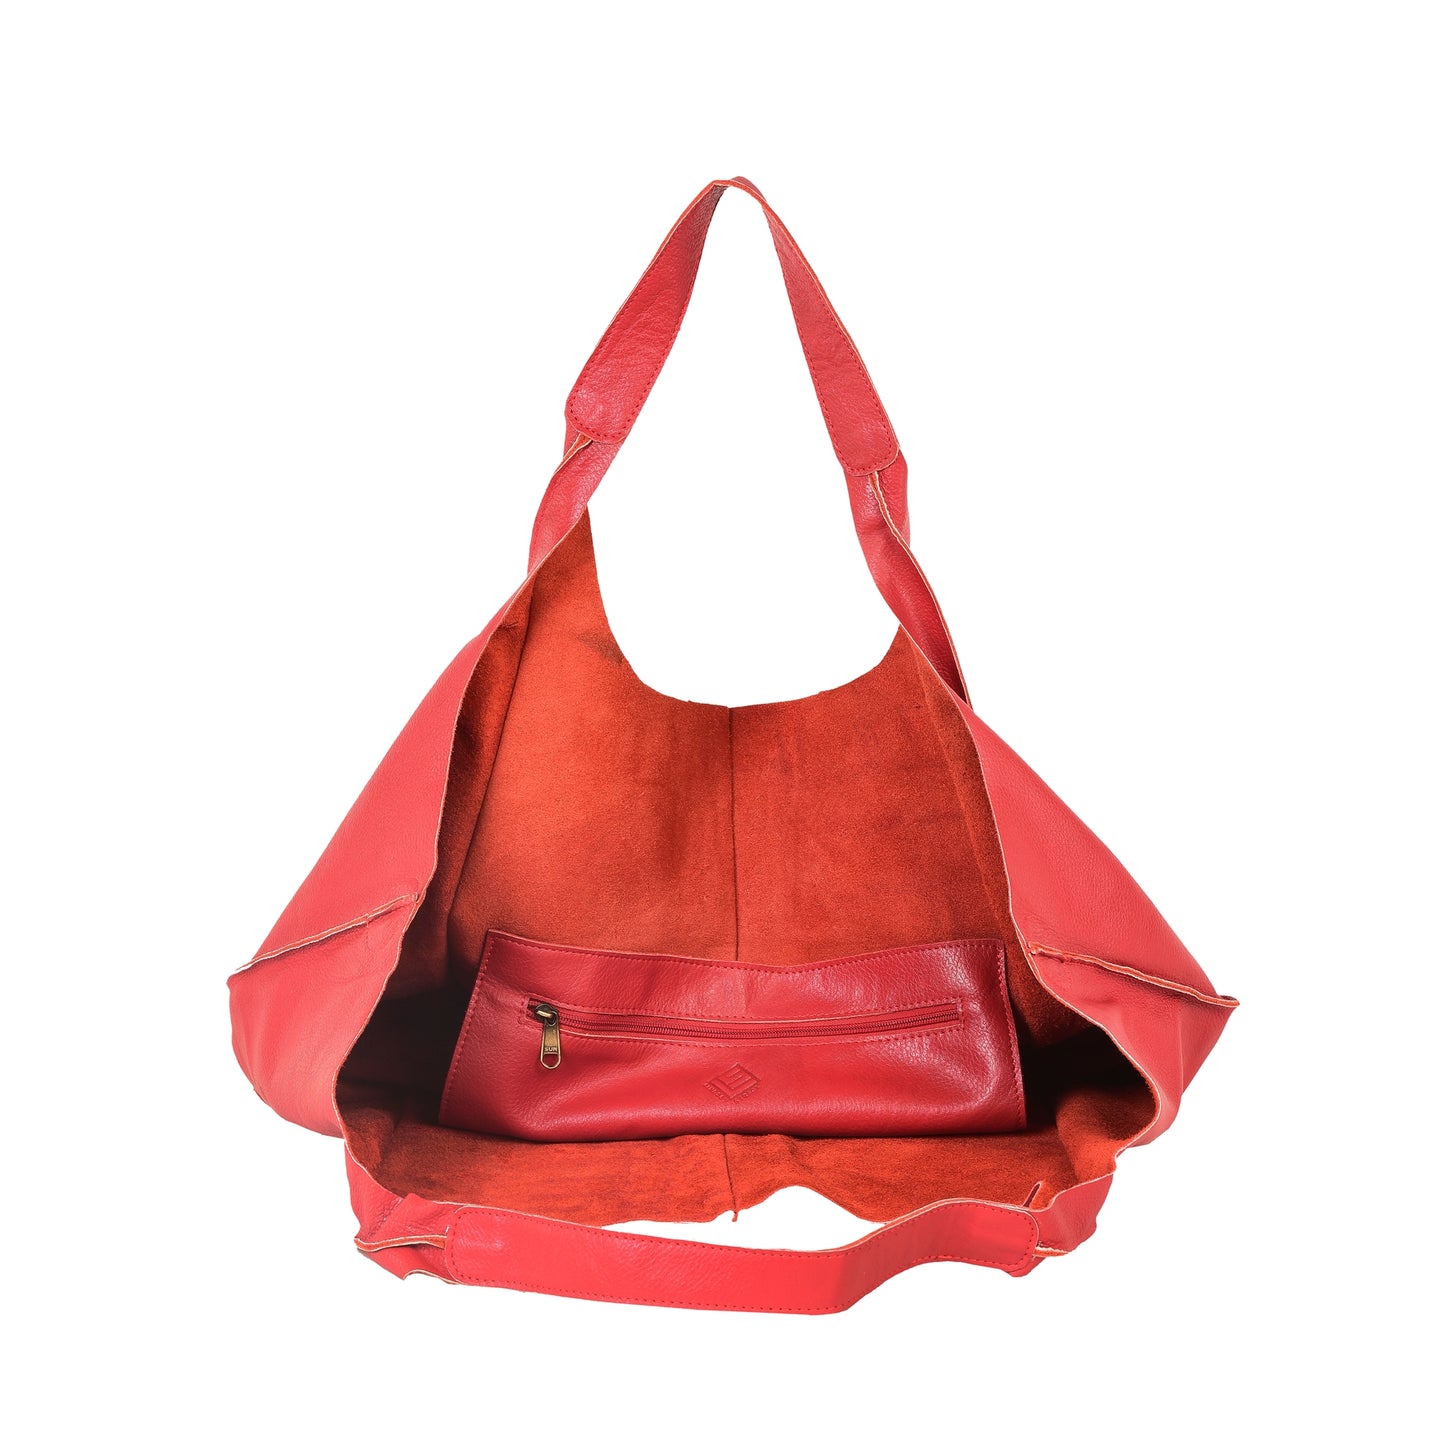 Extra-Large Carryall Bag - Alabaster Leather - Marino Orlandi